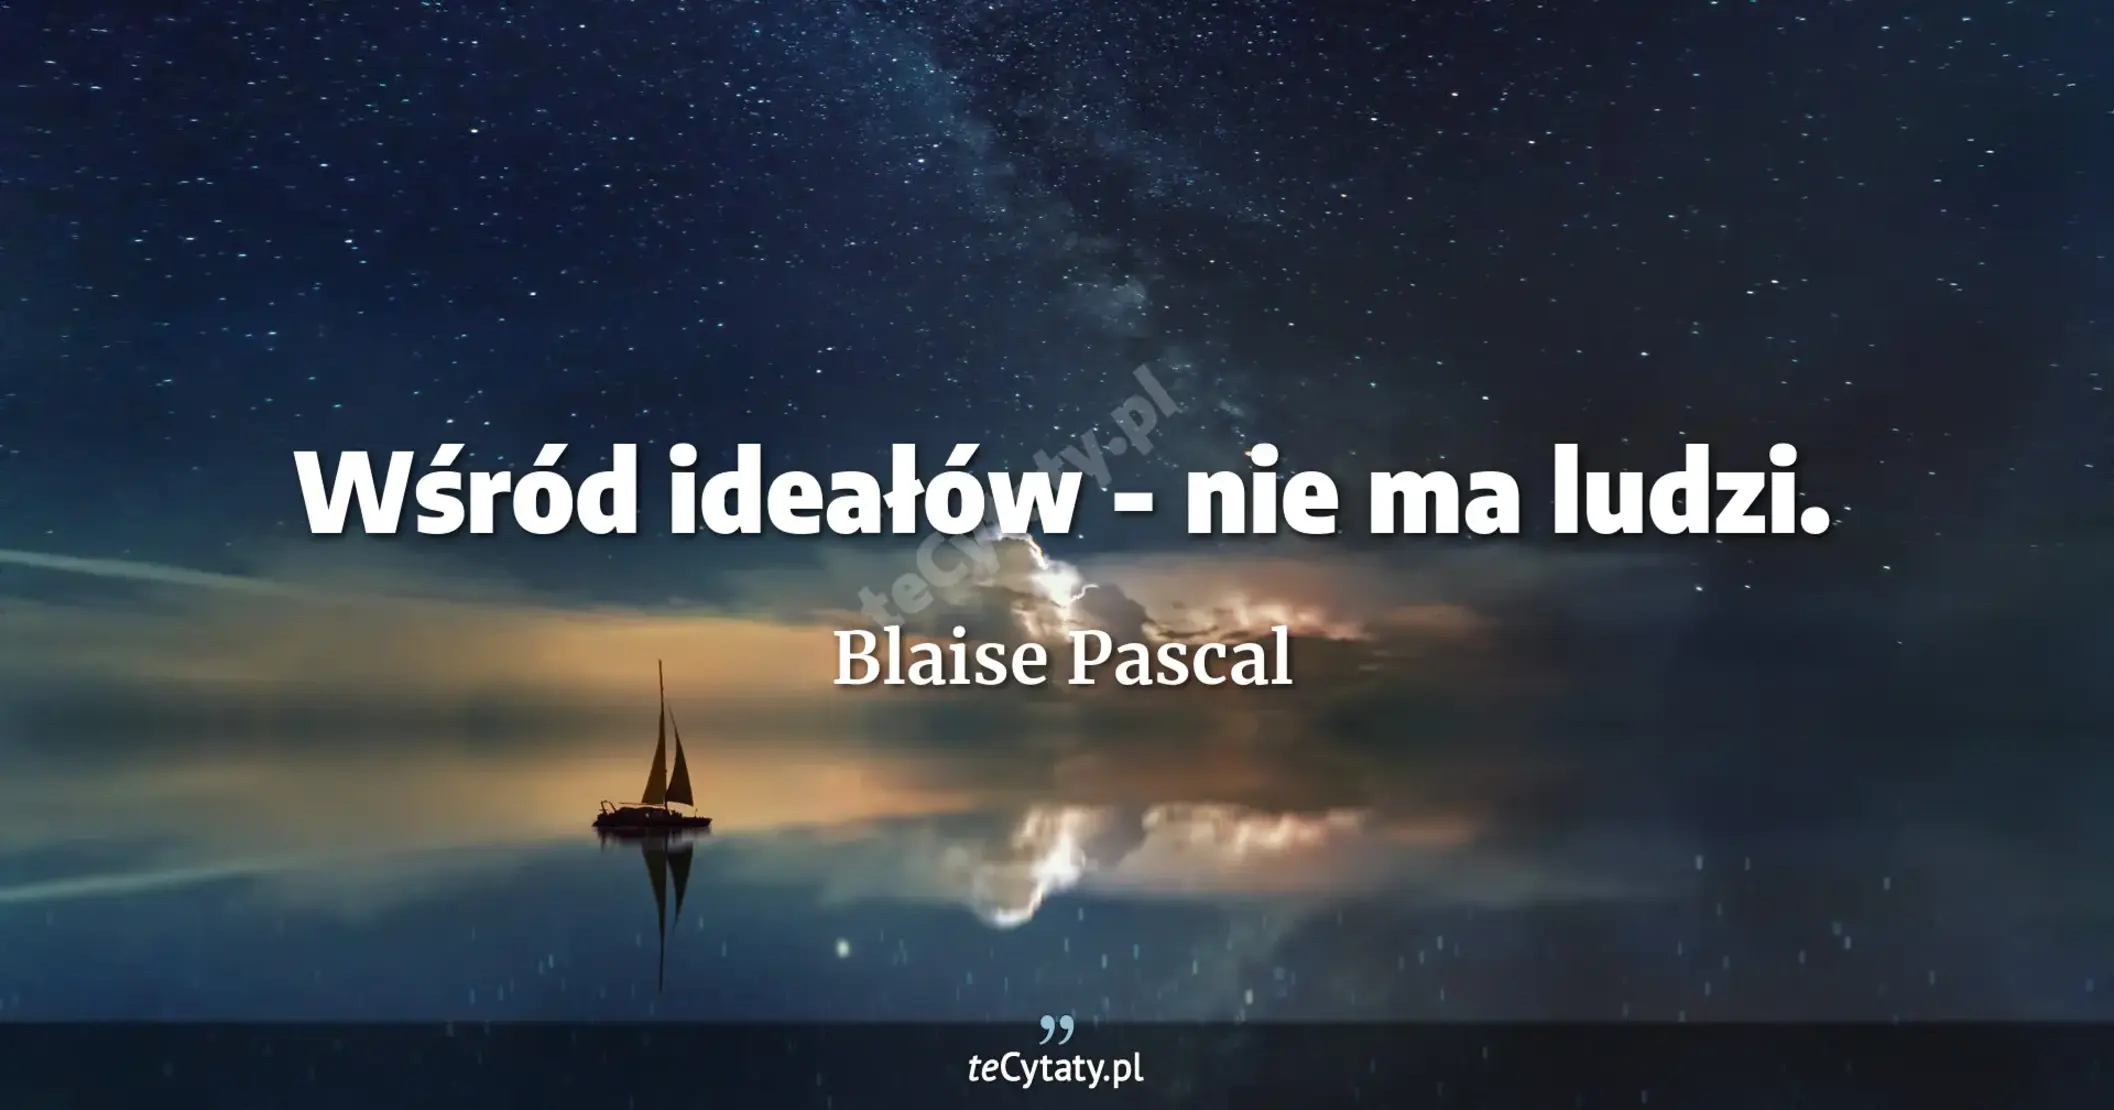 Wśród ideałów - nie ma ludzi. - Blaise Pascal